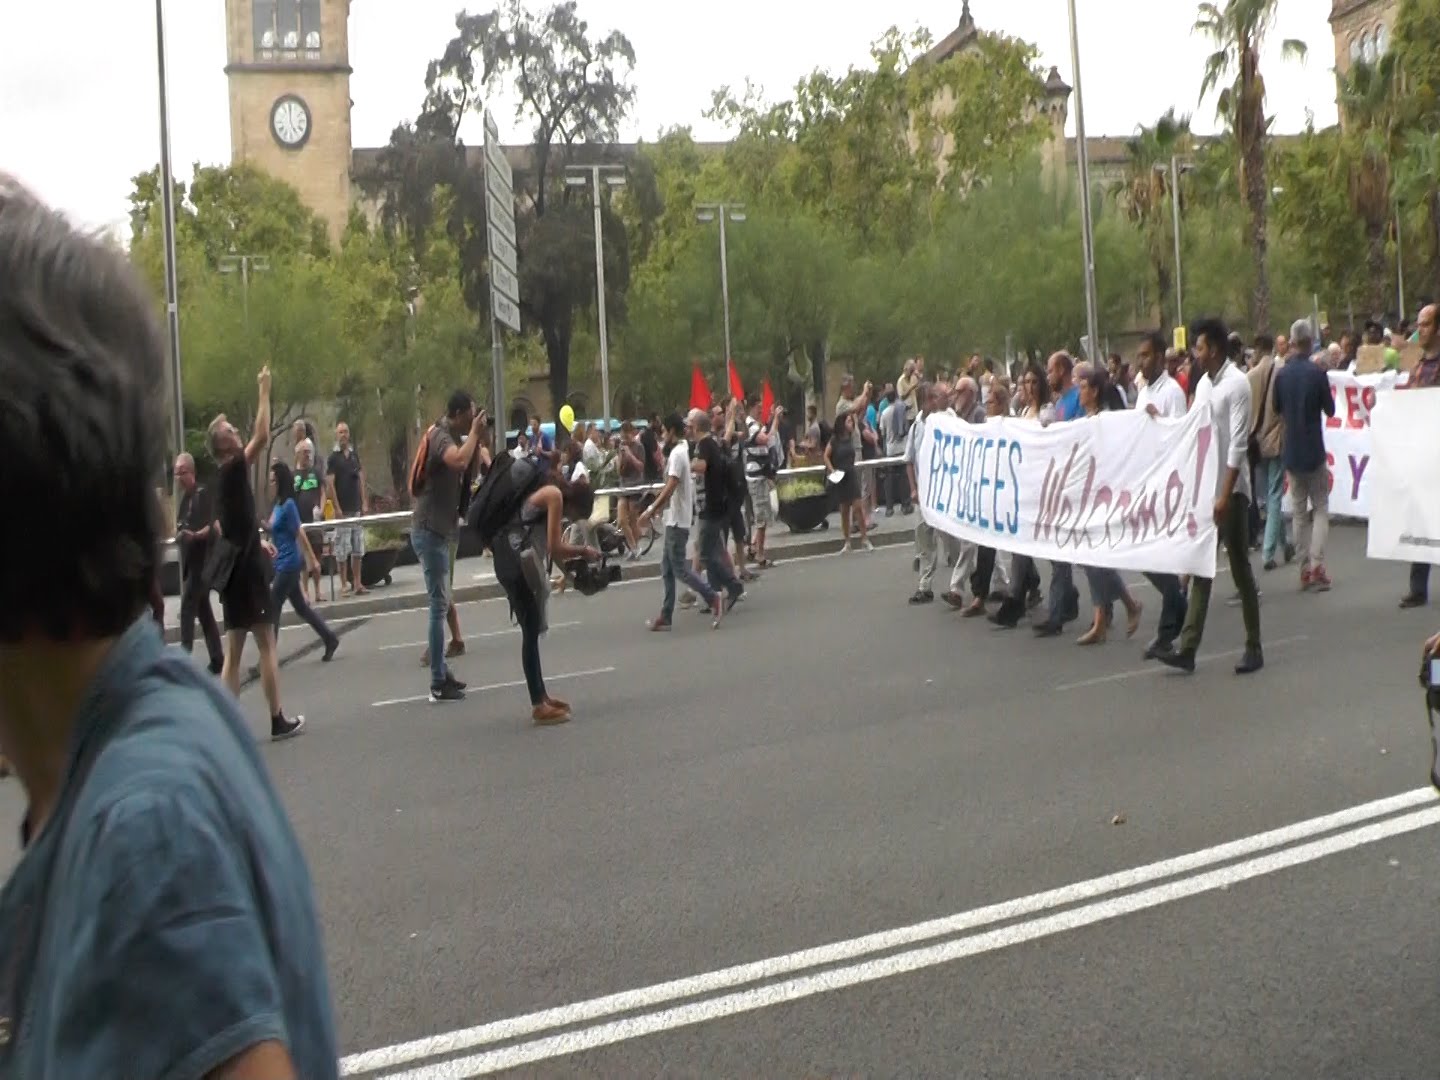 Una manifestació a la qual han assistit més d·un miler de persones ha travessat el barri del Raval, a Barcelona, per sumar-se a la Jornada Europea d·Acció pels Refugiats. L·han organitzat ·Stop Mare Mortum· i Unitat contra el Feixisme i el Racisme. La manifestació ha començat a la plaça Universitat i ha acabat al Port Vell, on s·han llançat flors a l·aigua en homenatge als milers de persones que moren ofegats a la Mediterrània en el seu intent d·arribar a Europa.